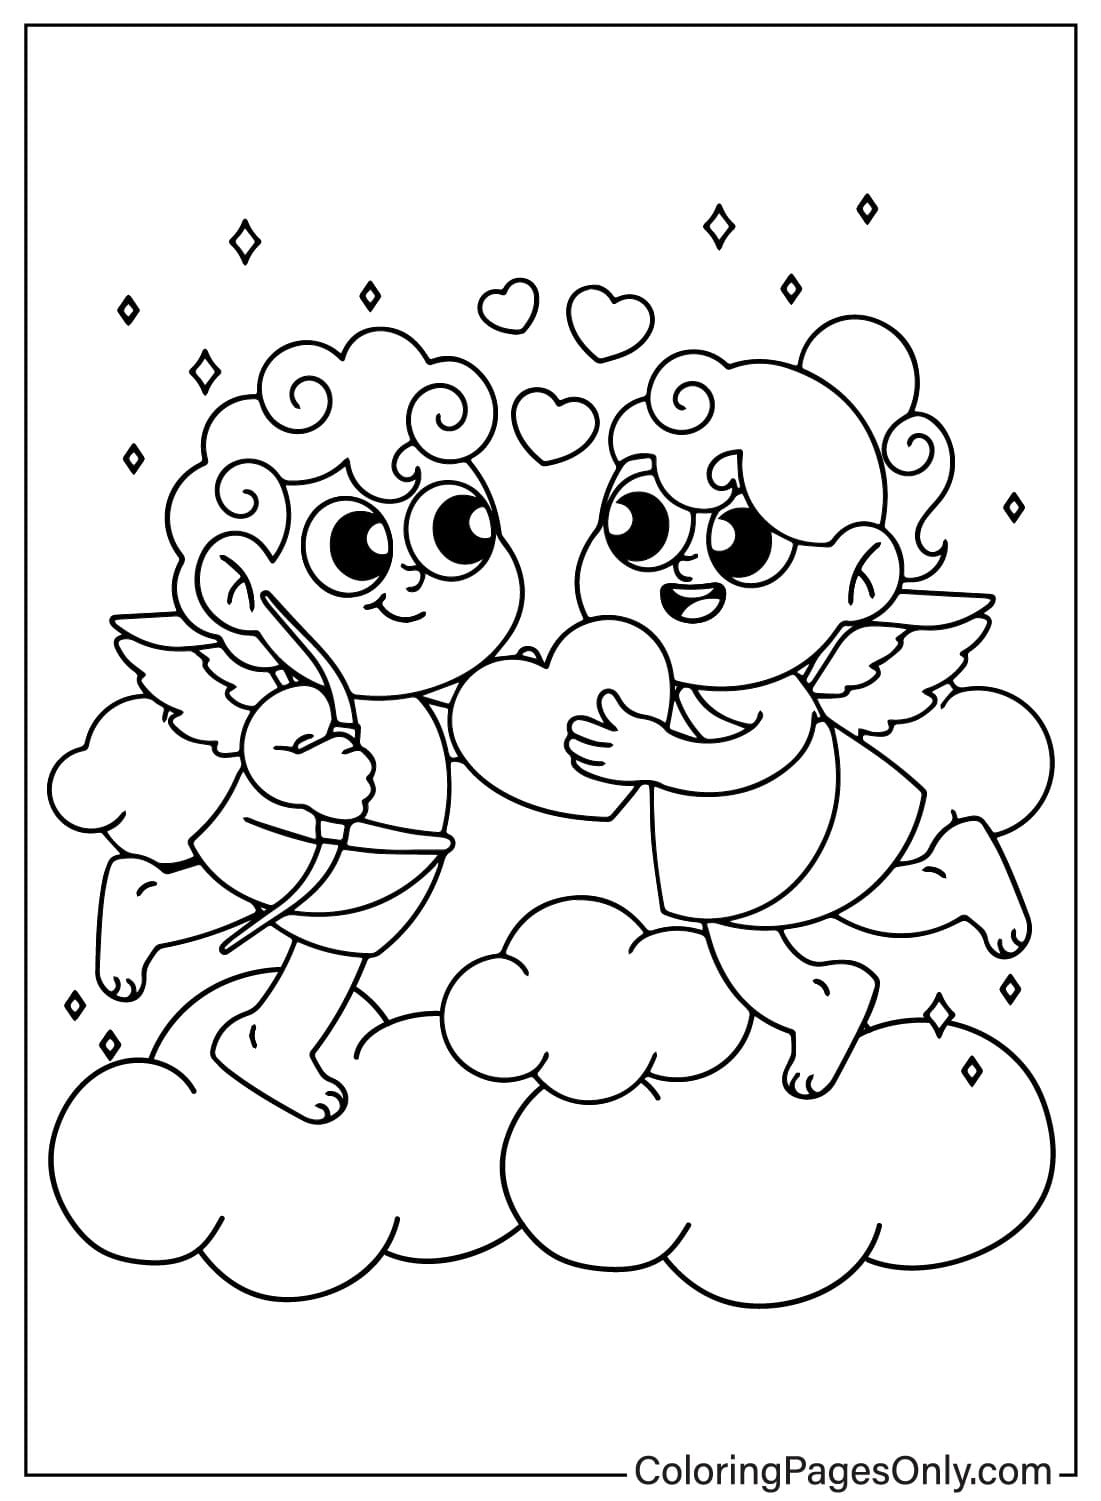 Página para colorear de Cupido para imprimir desde Cupido